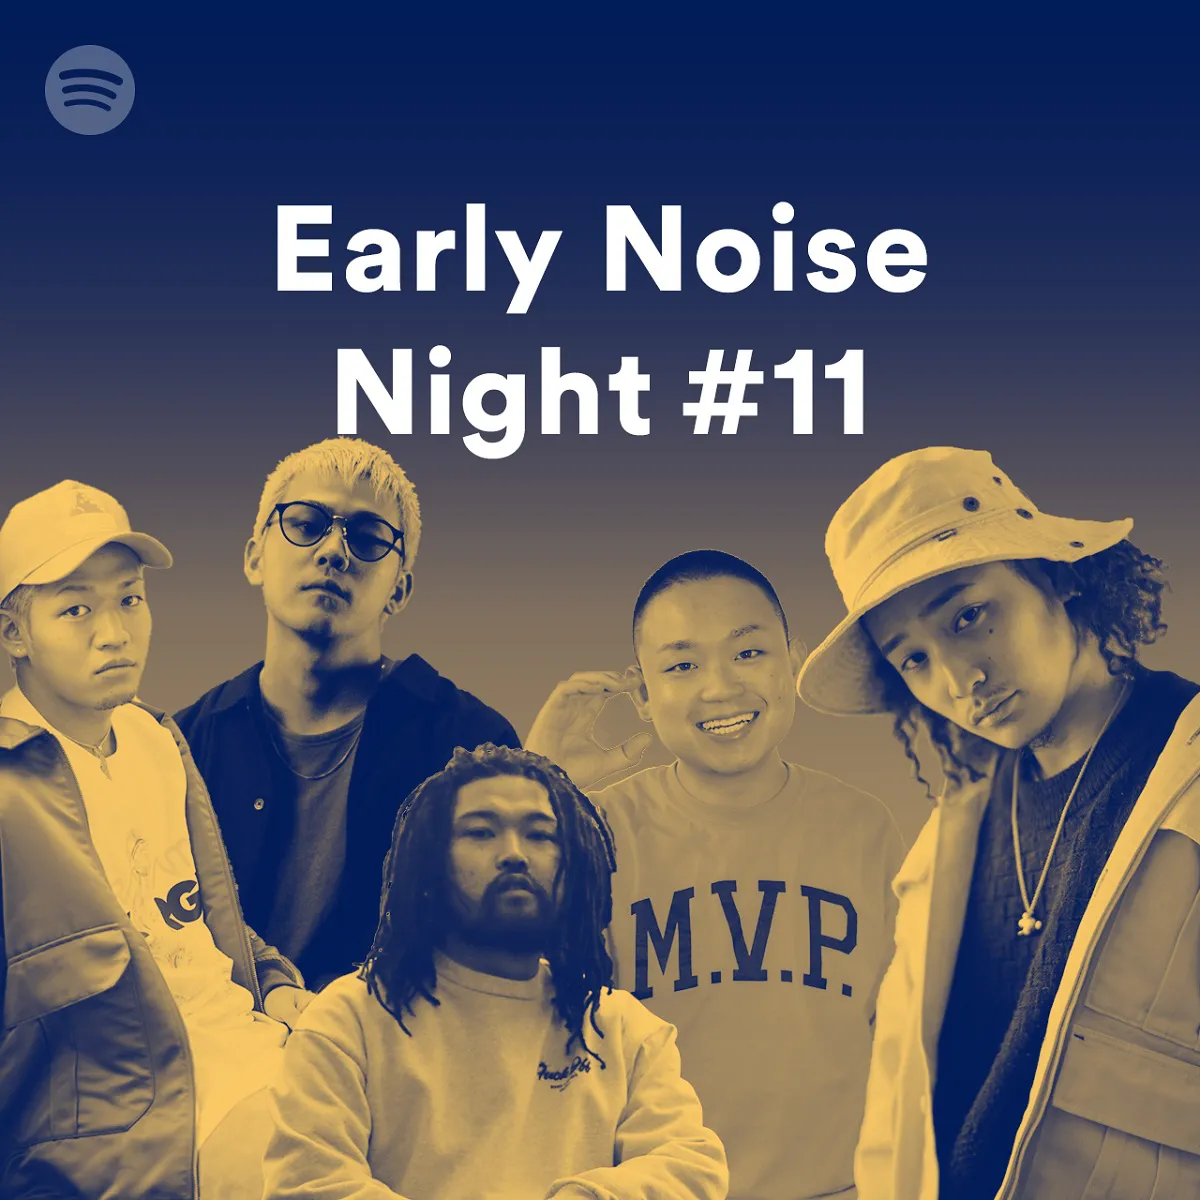 7月5日(金)、東京湾を航行する船「Hotaluna(ホタルナ)」にて開催されるライブイベント「Spotify Early Noise Night #11」